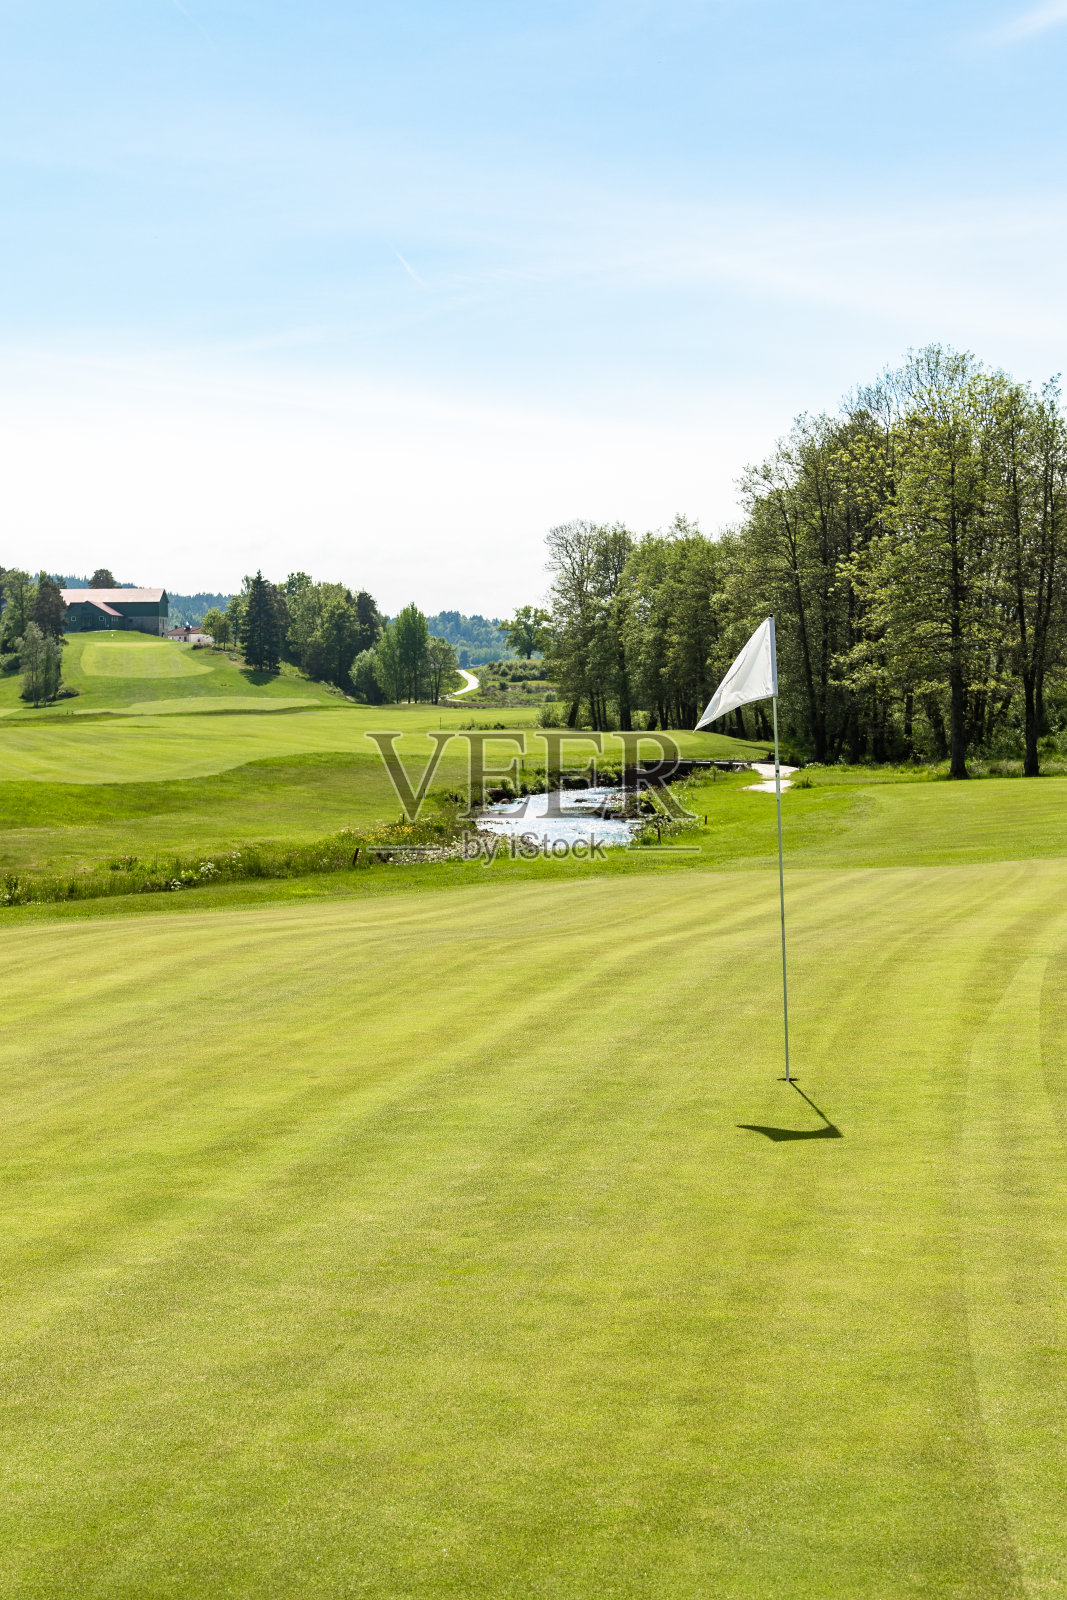 高尔夫球场。洞口挂着一面白旗，天气晴朗照片摄影图片